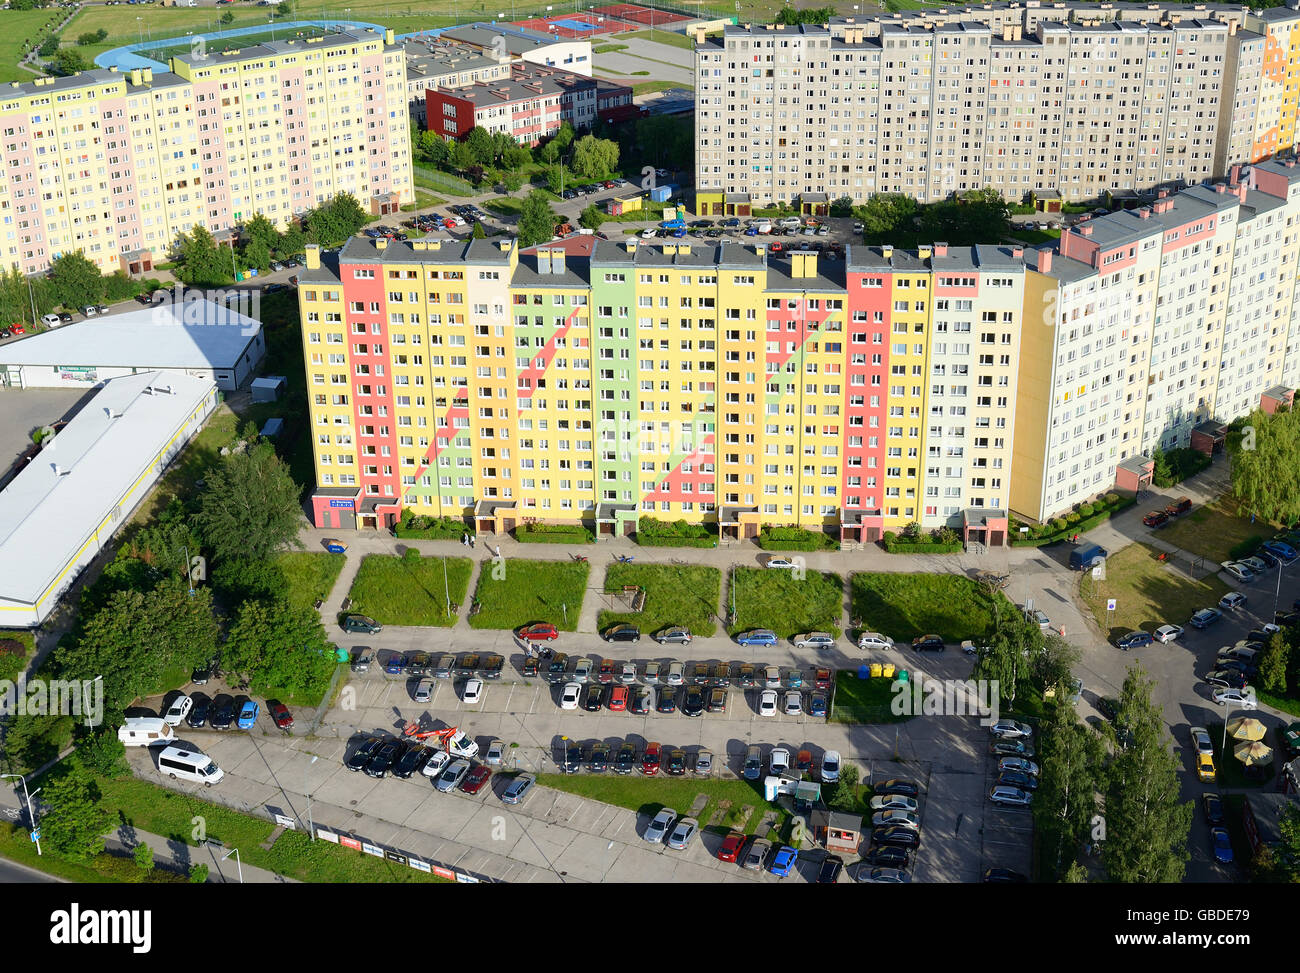 VISTA AEREA. Casa colorata. Walbrzych, voivodeship inferiore della Slesia, Polonia. Foto Stock